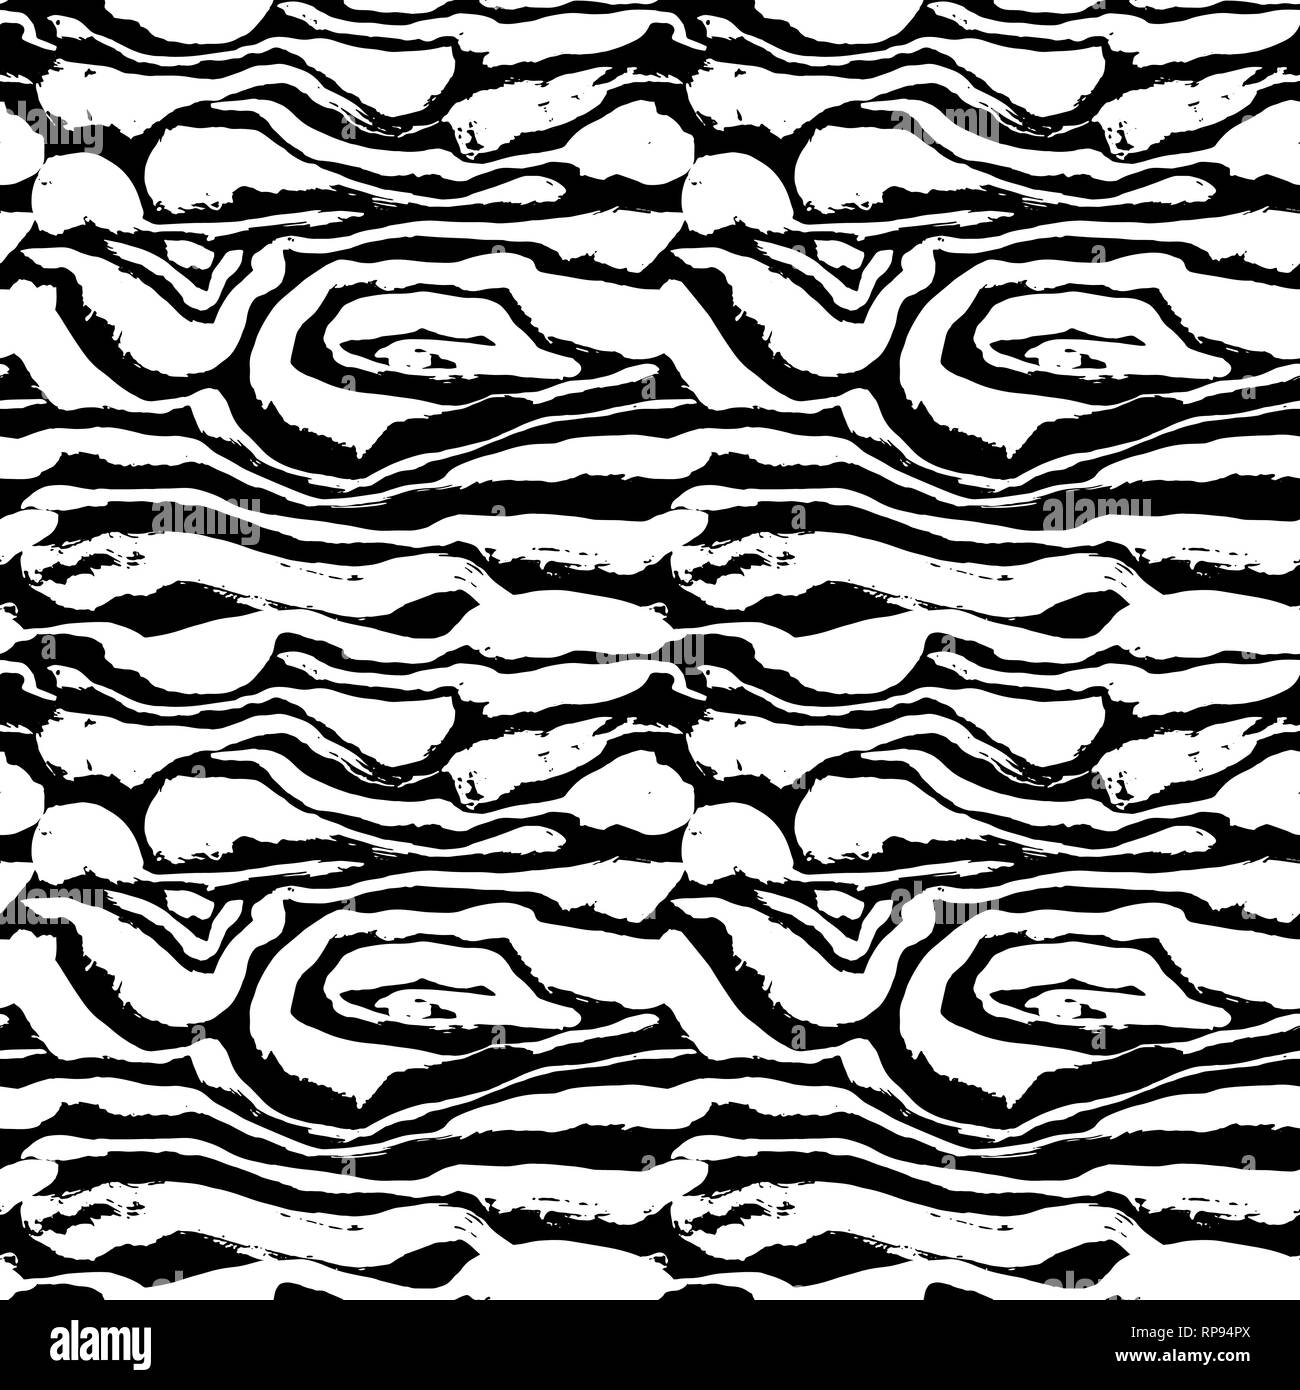 Peint pinceau transparente zebra pattern. Bandes noires et blanches grunge background. Illustration de Vecteur